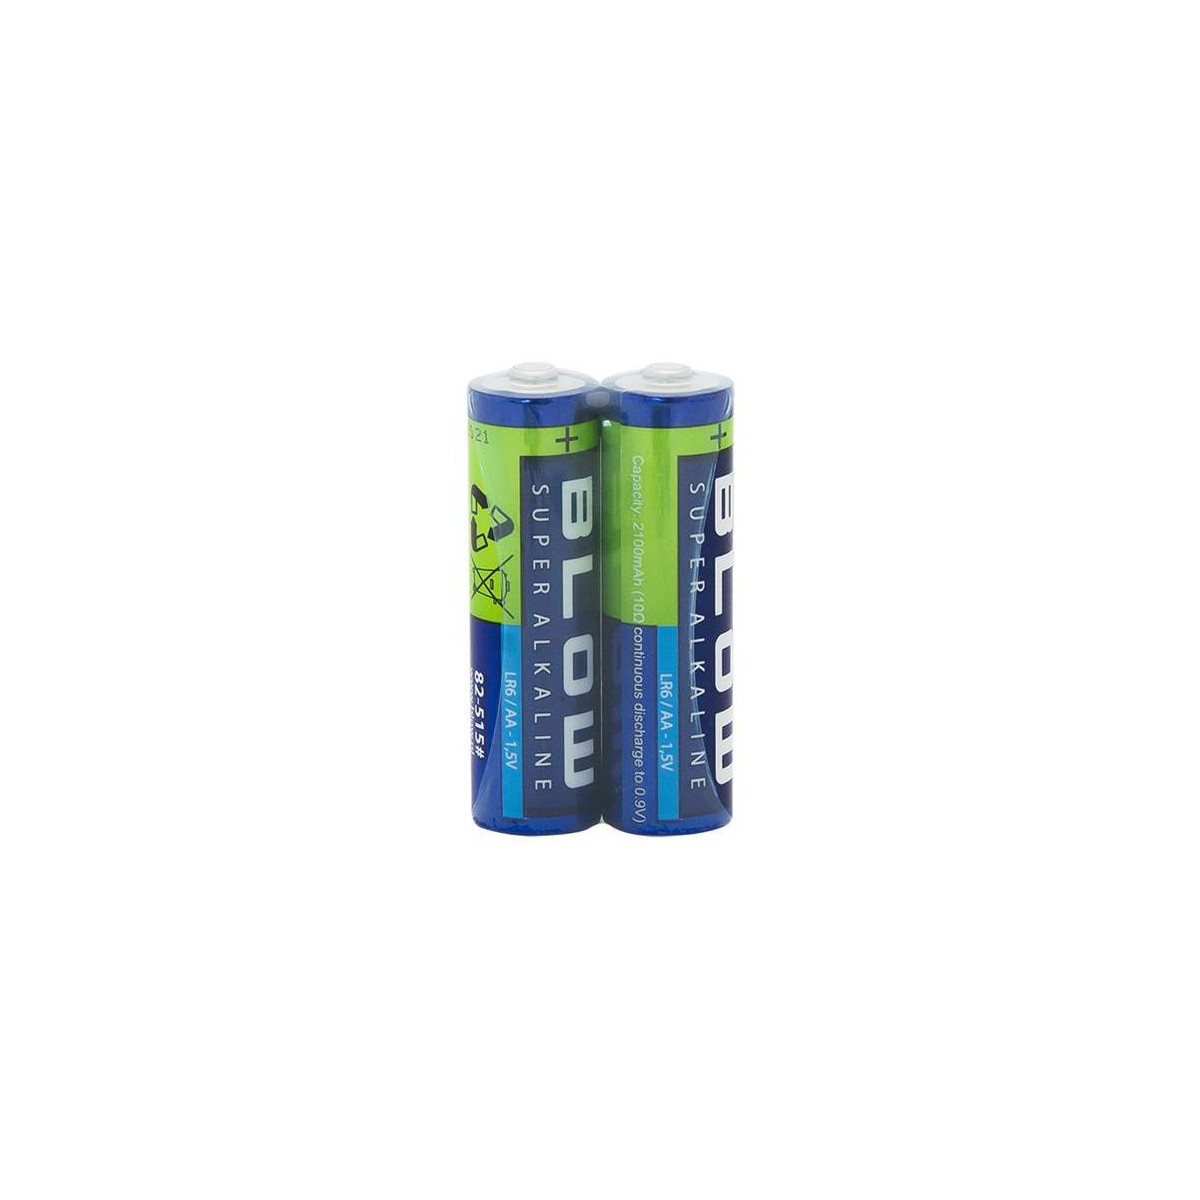 More about Baterie AA (LR6) alkalická BLOW Super Alkaline 2ks / shrink